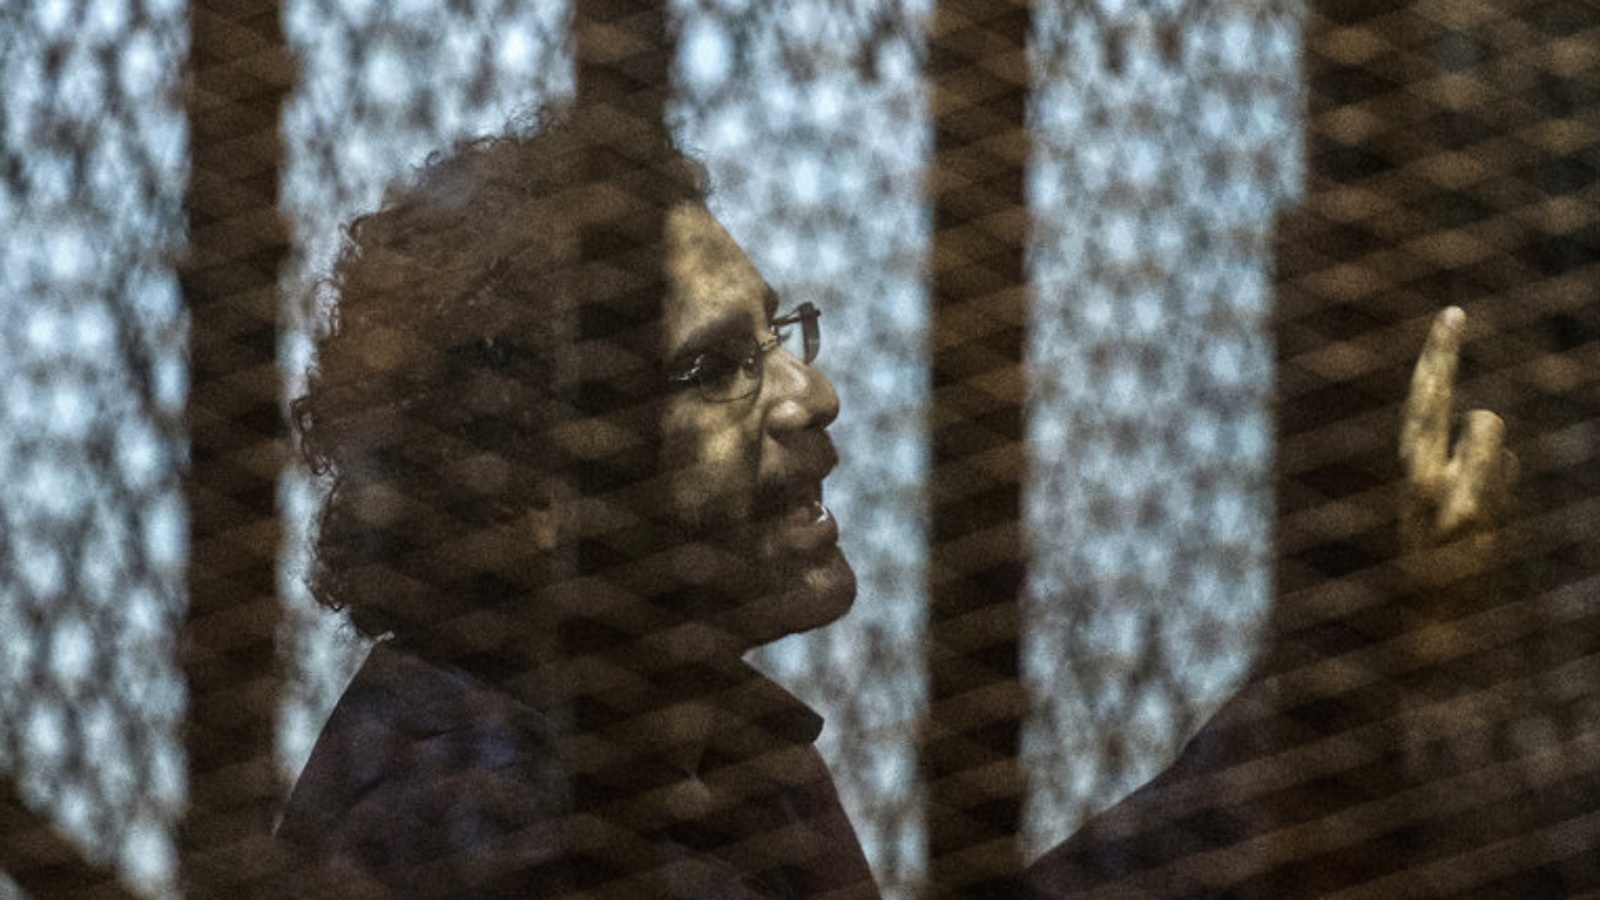 علاء عبد الفتاح، السجين السياسي البارز في مصر